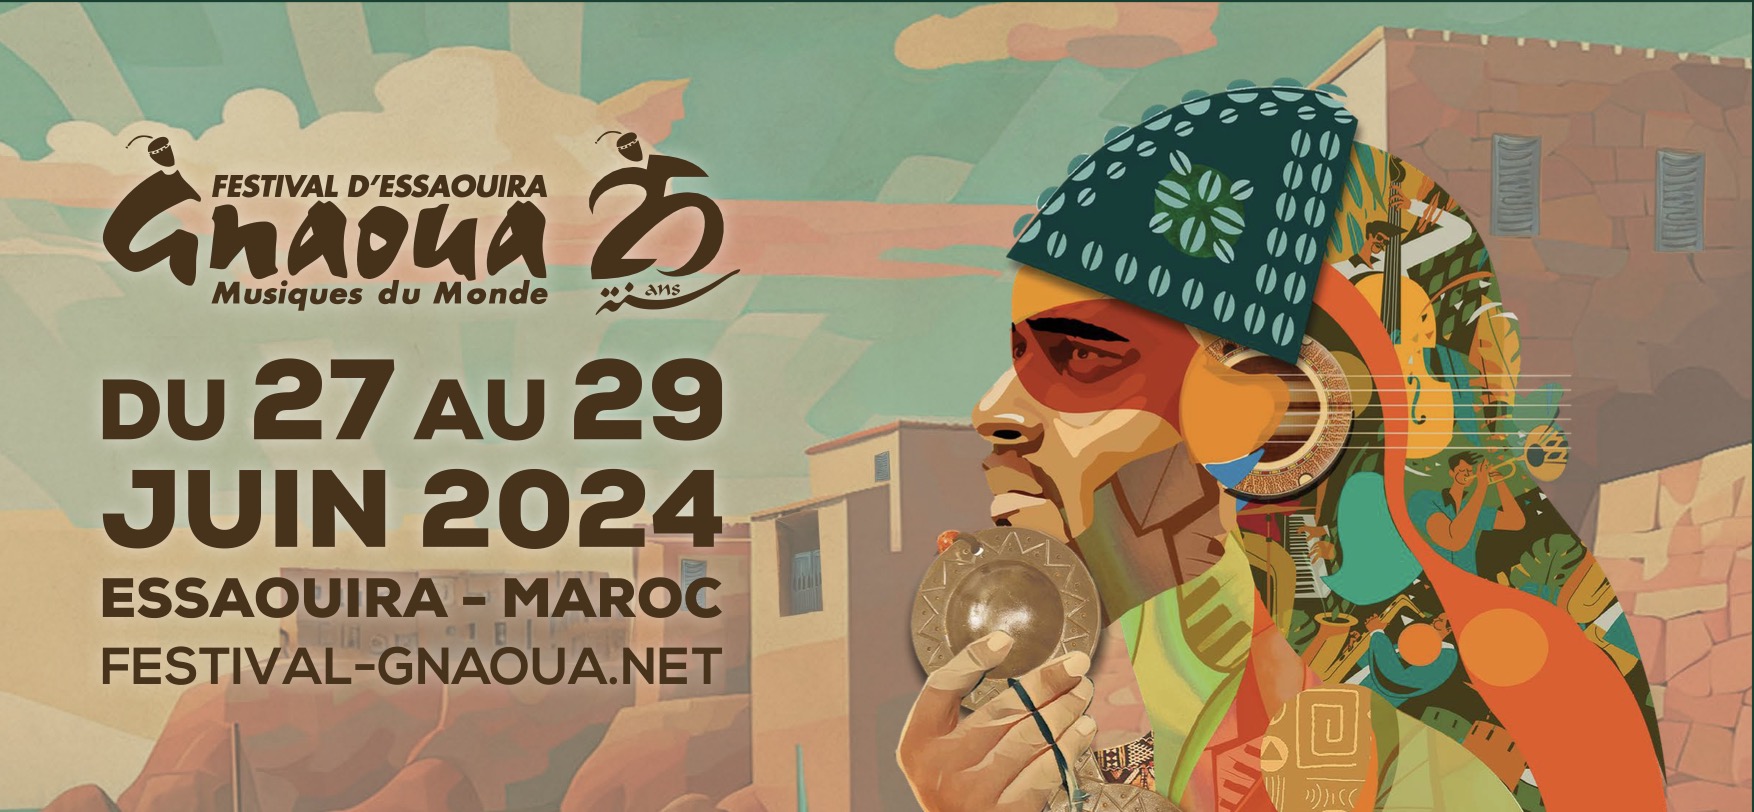 Les têtes d’affiche de la 25e édition du Festival Gnaoua promettent d’enflammer les scènes !